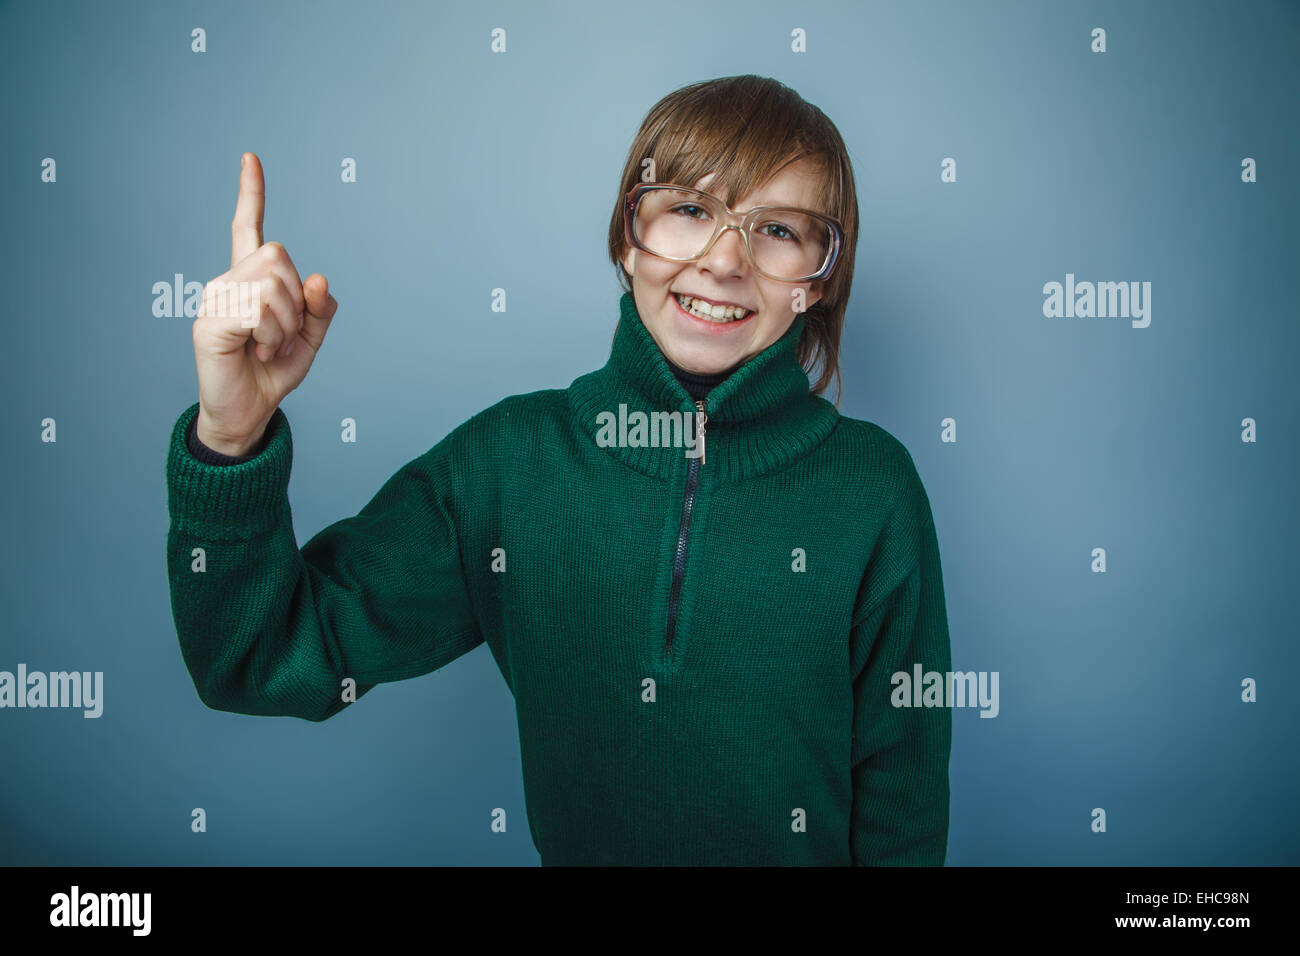 Ragazzo adolescente marrone capelli aspetto europeo in maglione verde wit Foto Stock